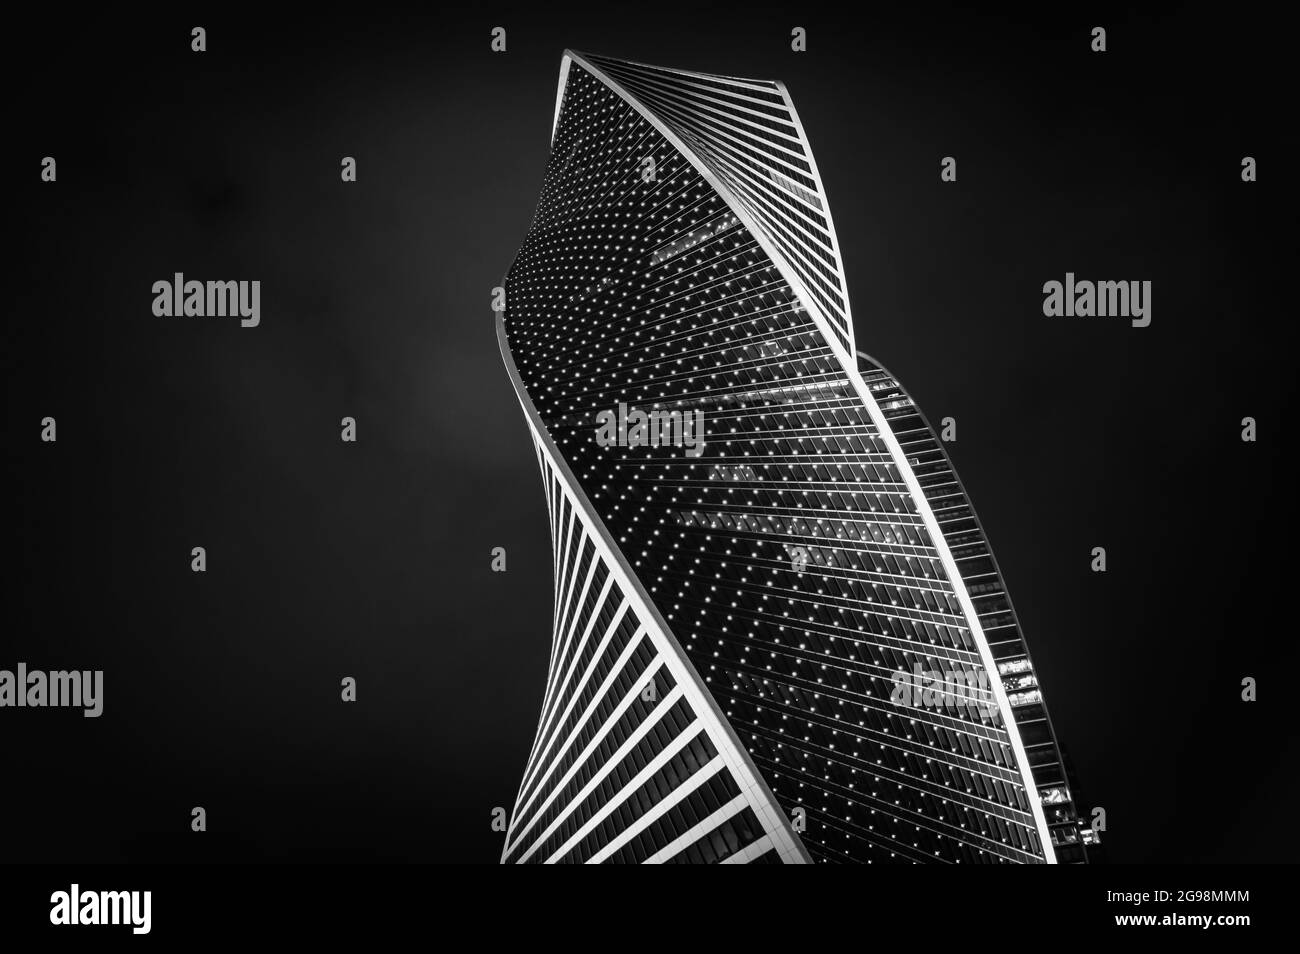 Bâtiment isolé du centre d'affaires international de Moscou dans la ville de Moscou, en Russie. Noir et blanc. Banque D'Images